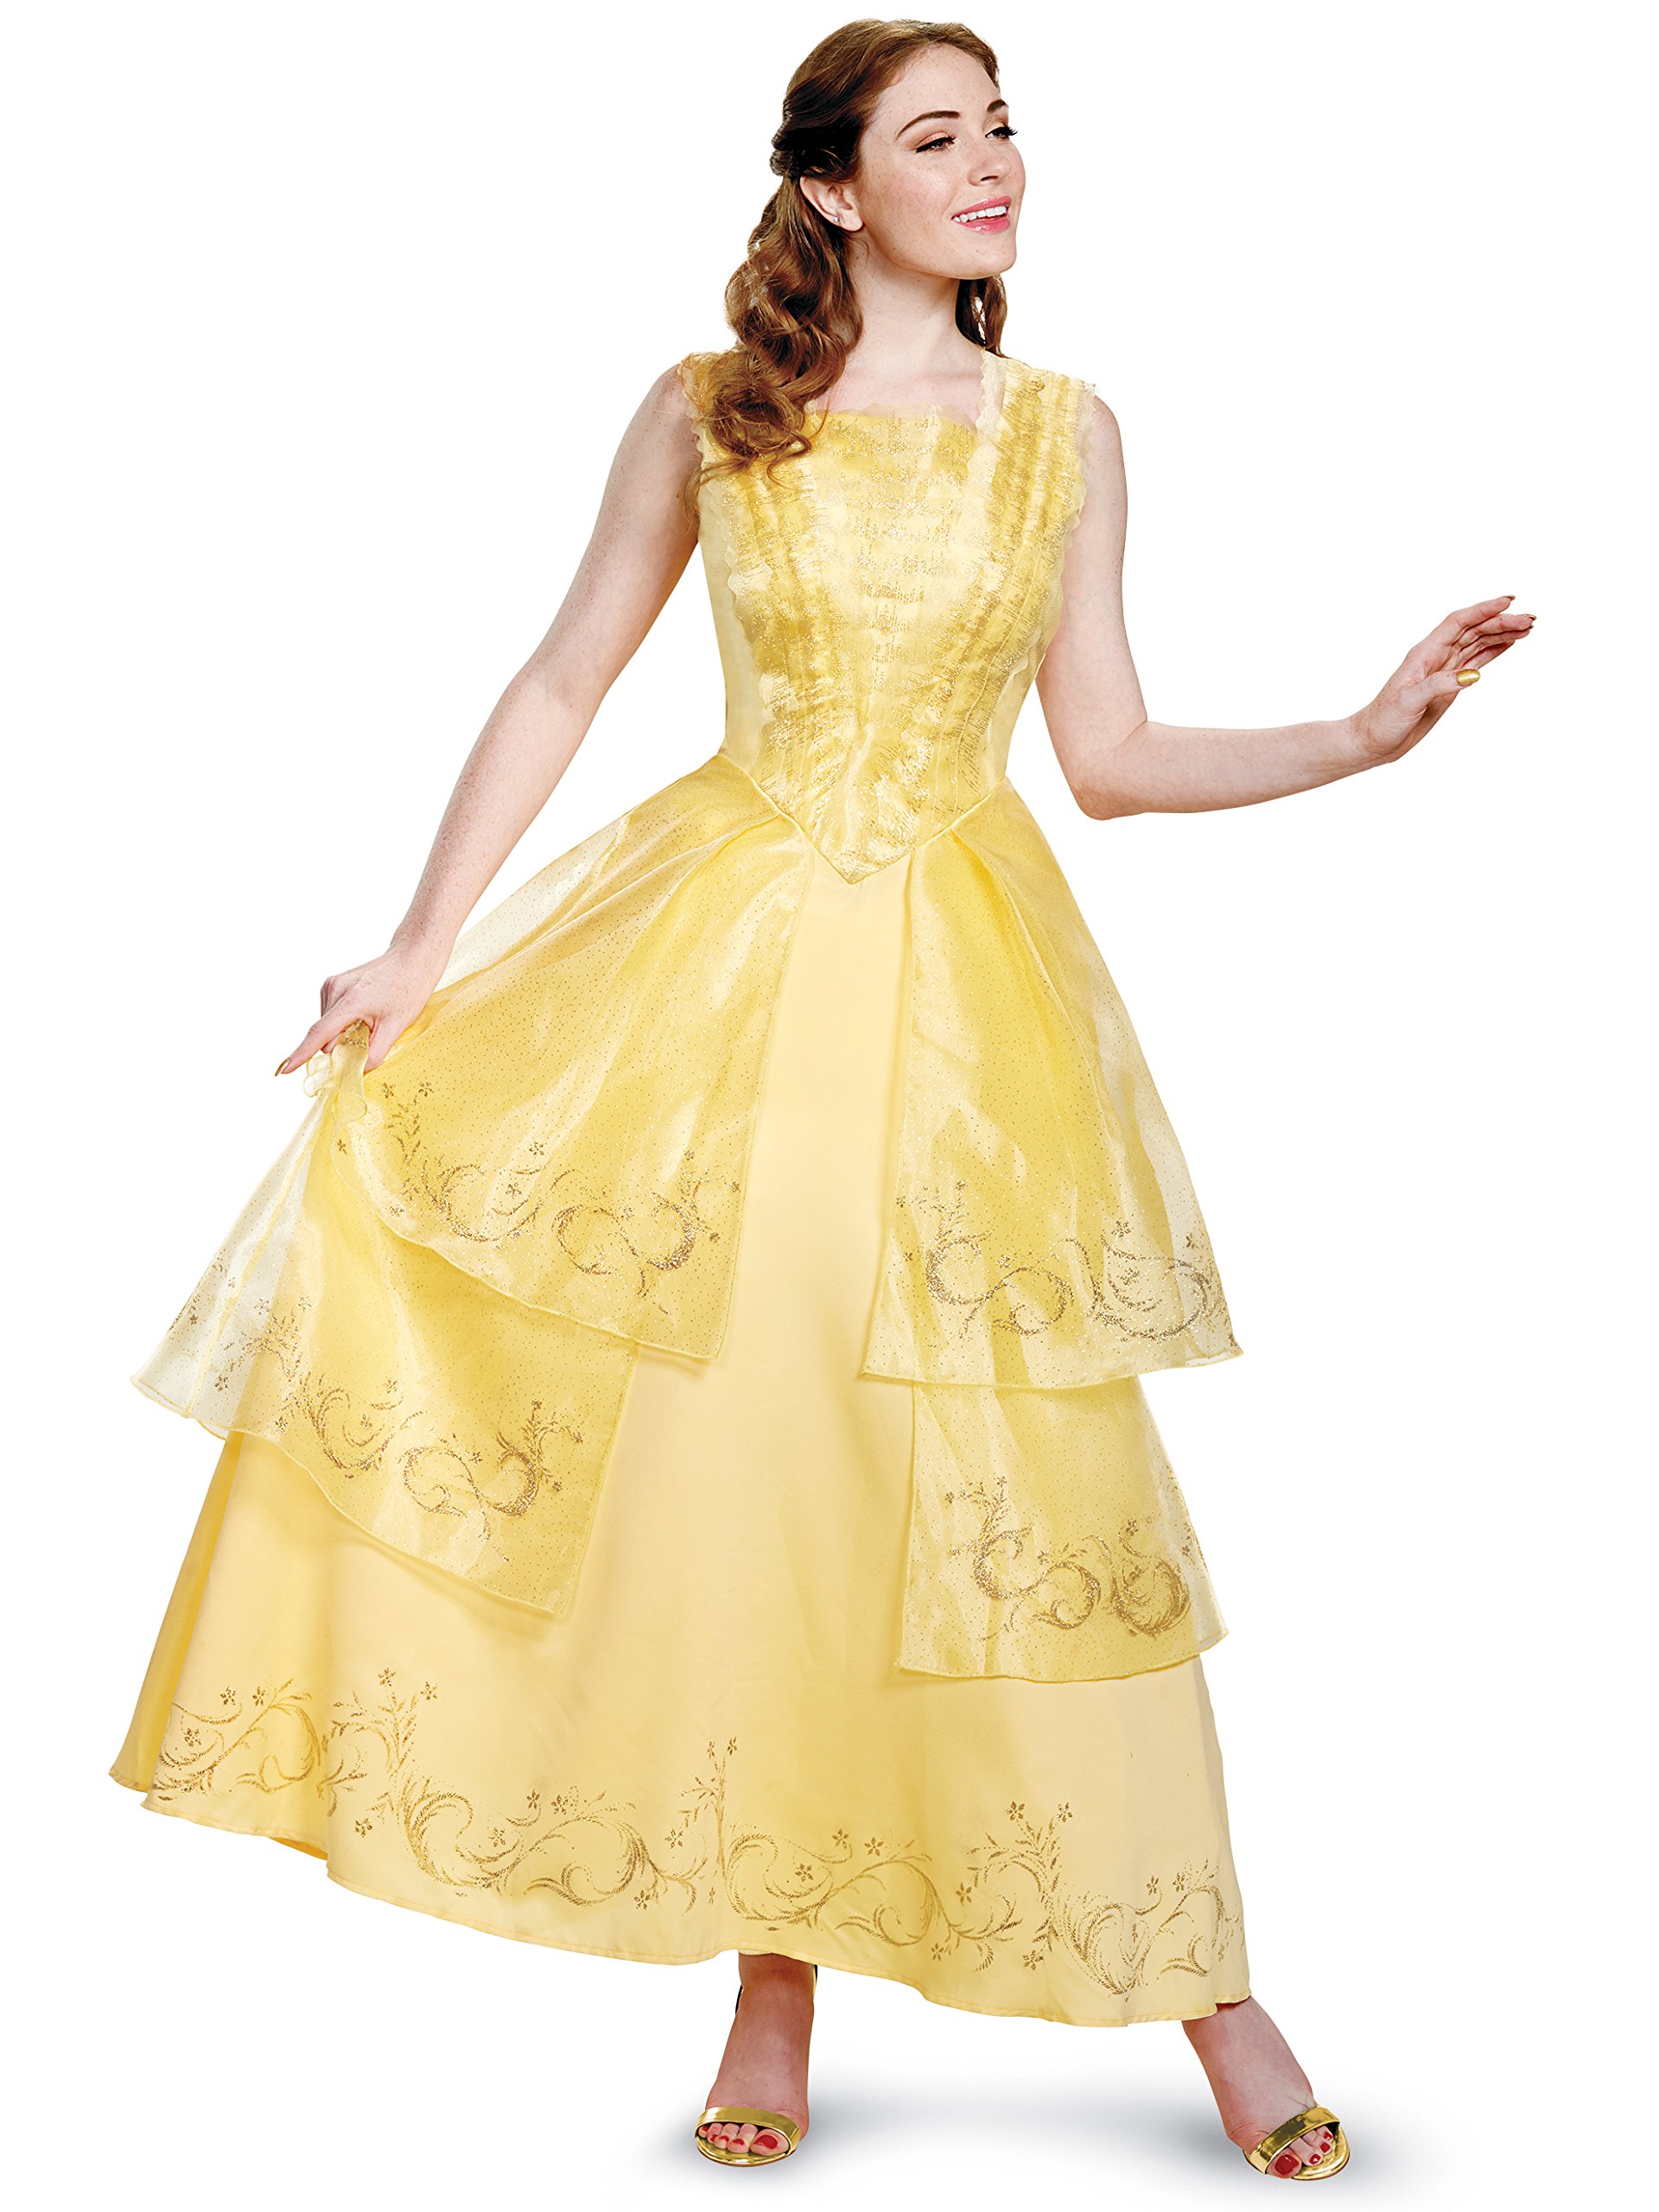 Disney Women's Plus Size Belle Ball Gown Prestige Adult Costume | eBay